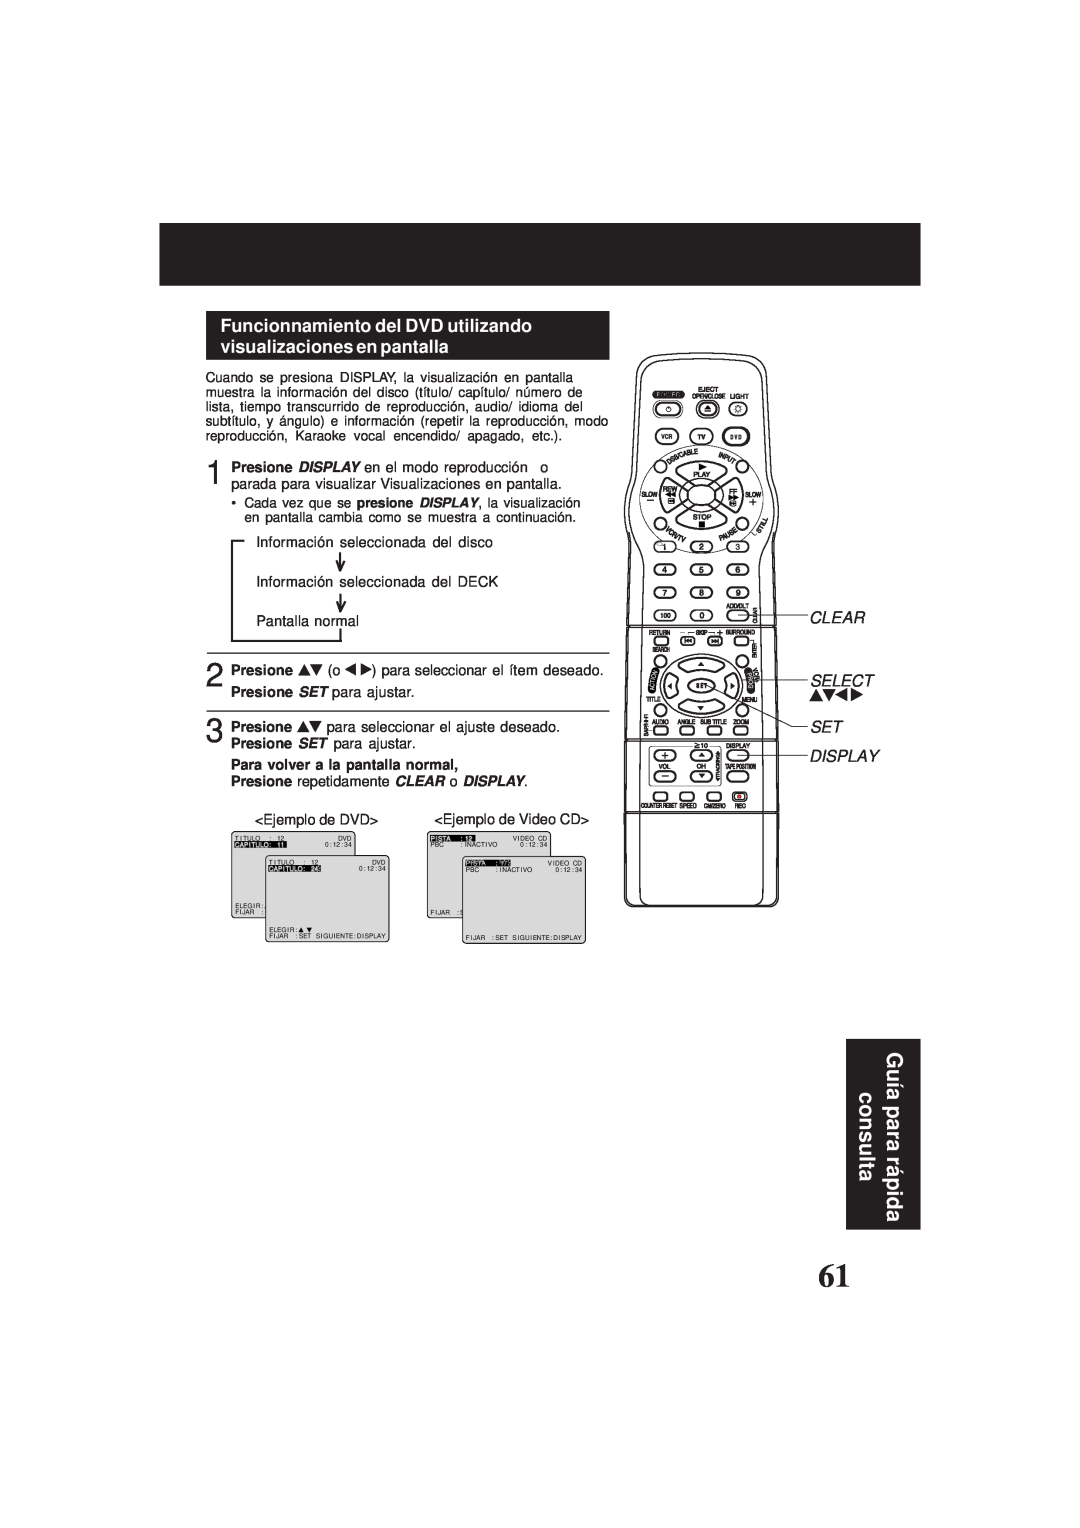 Panasonic PV-D4761 consulta, Guía para rá pida, Funcionnamiento del DVD utilizando visualizaciones en pantalla 